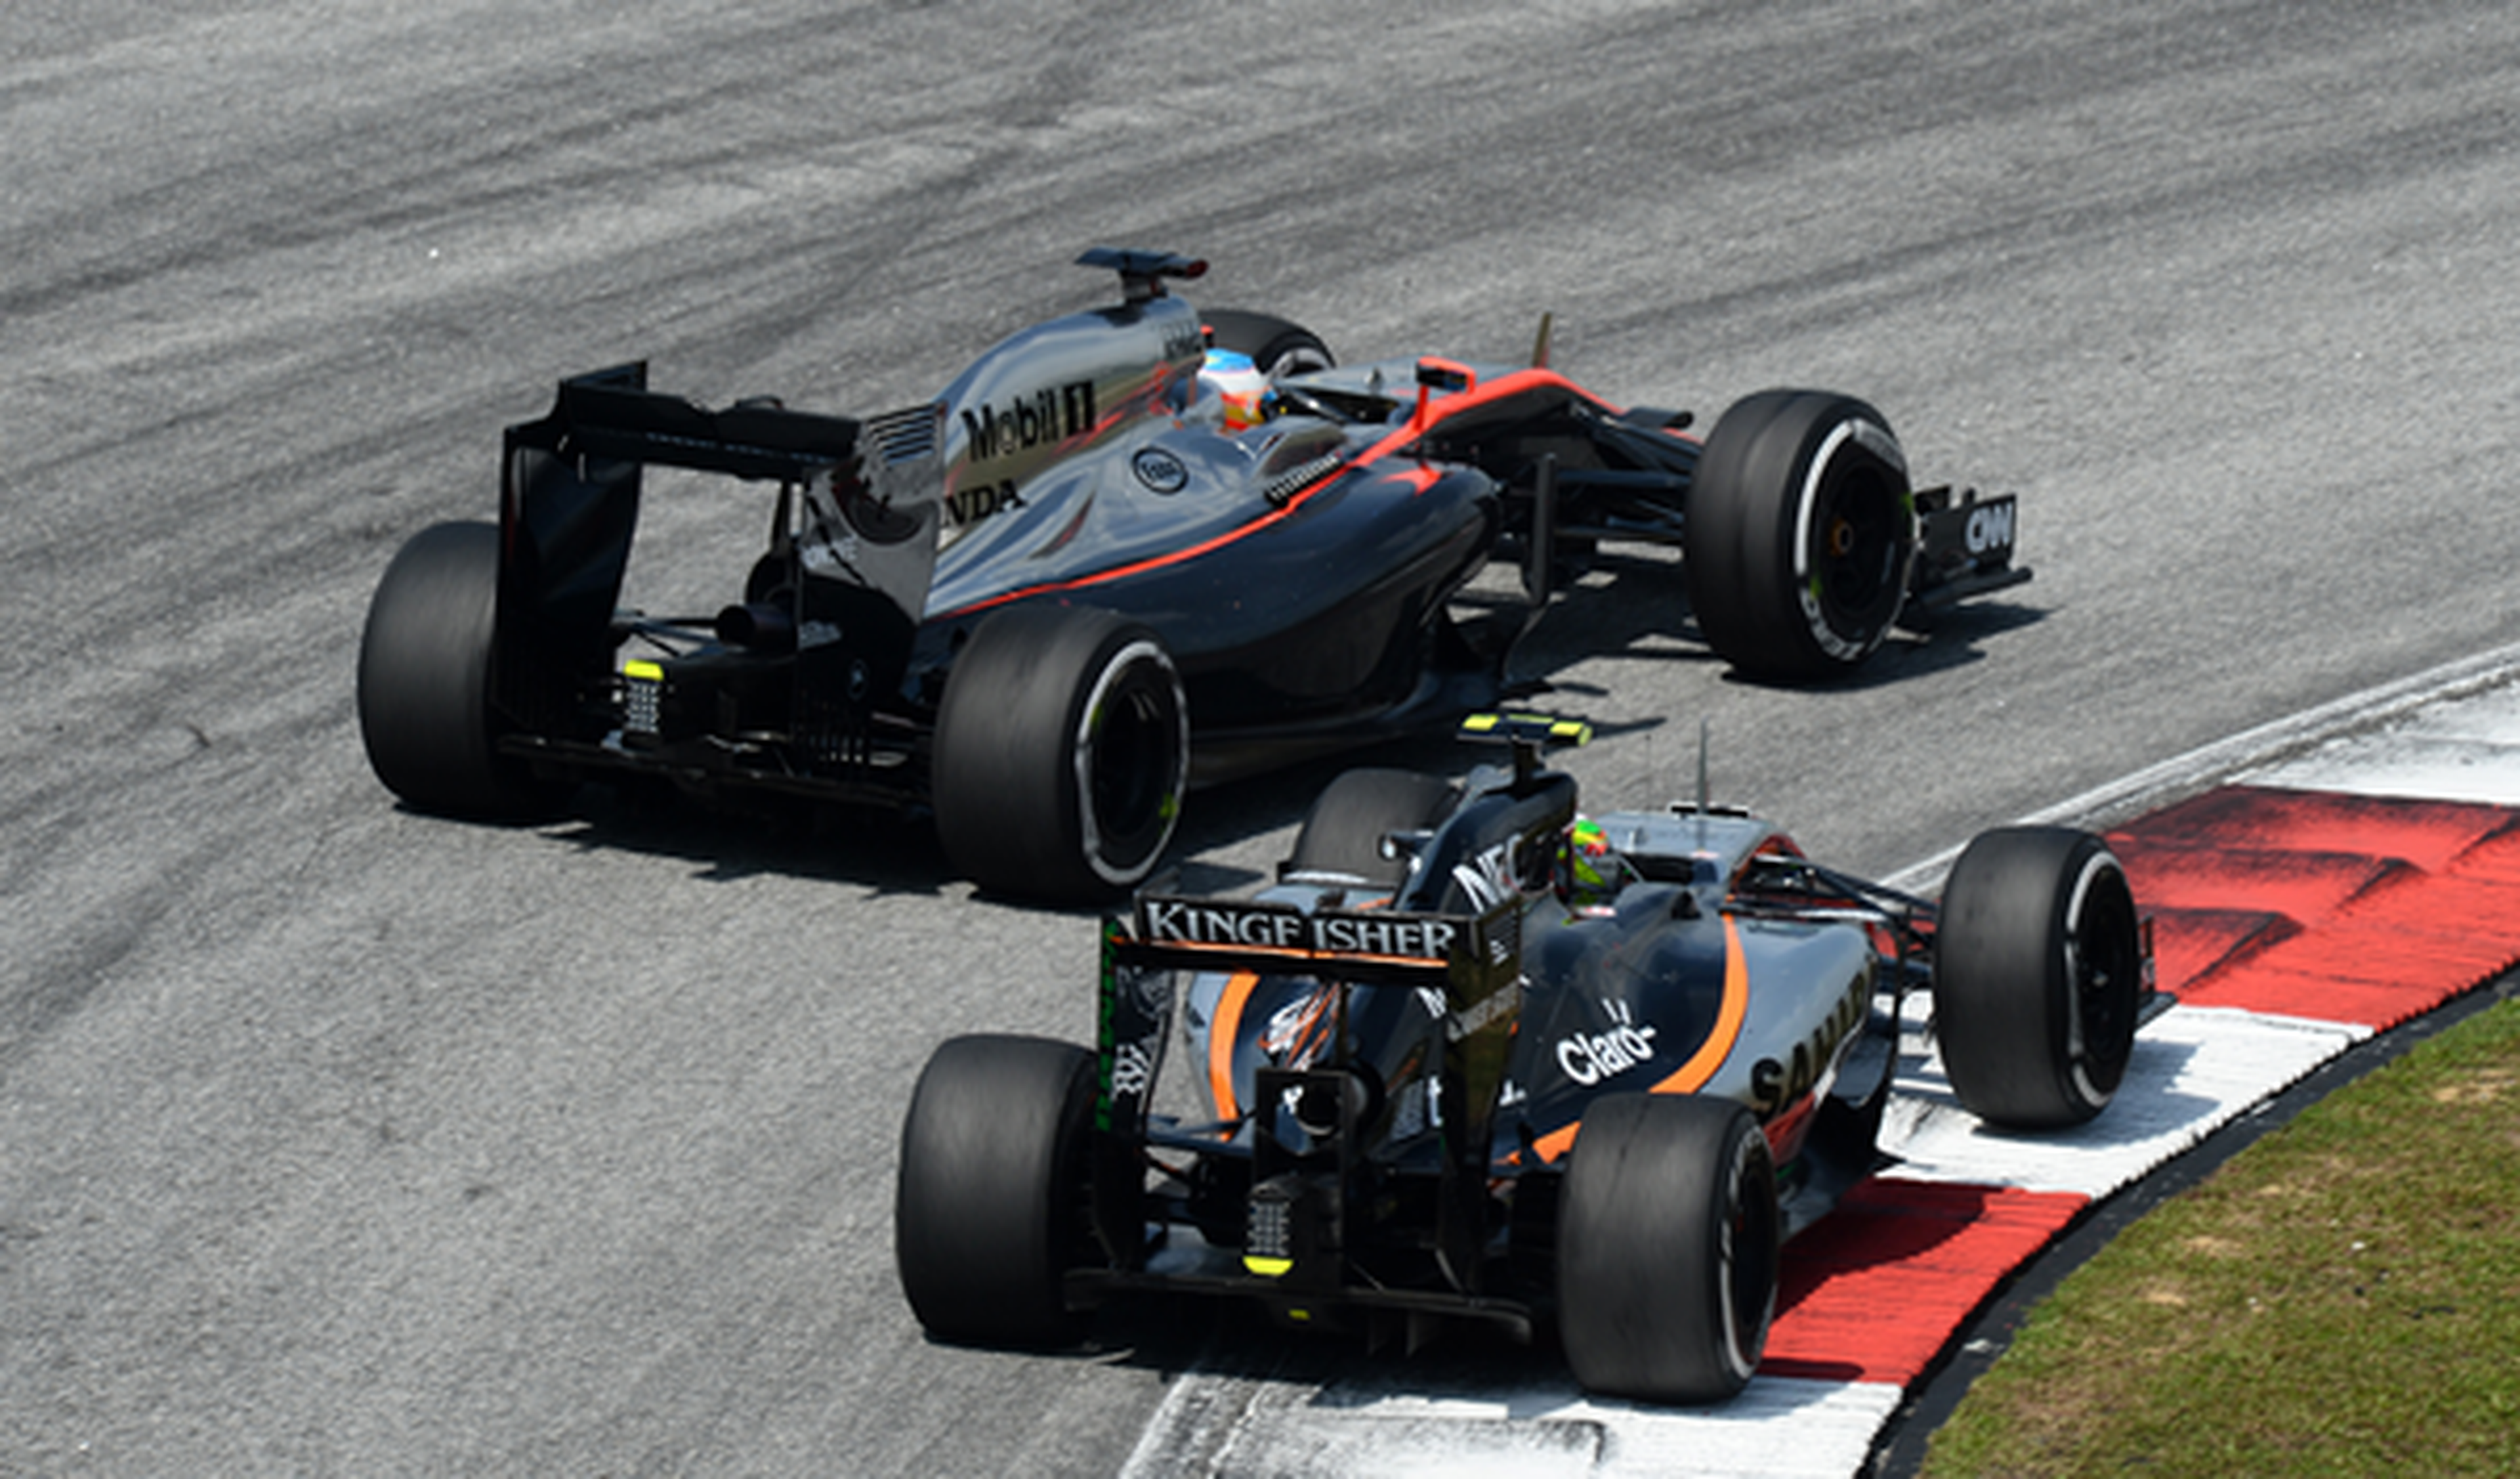 Alonso espera seguir luchando por los puntos en Malasia